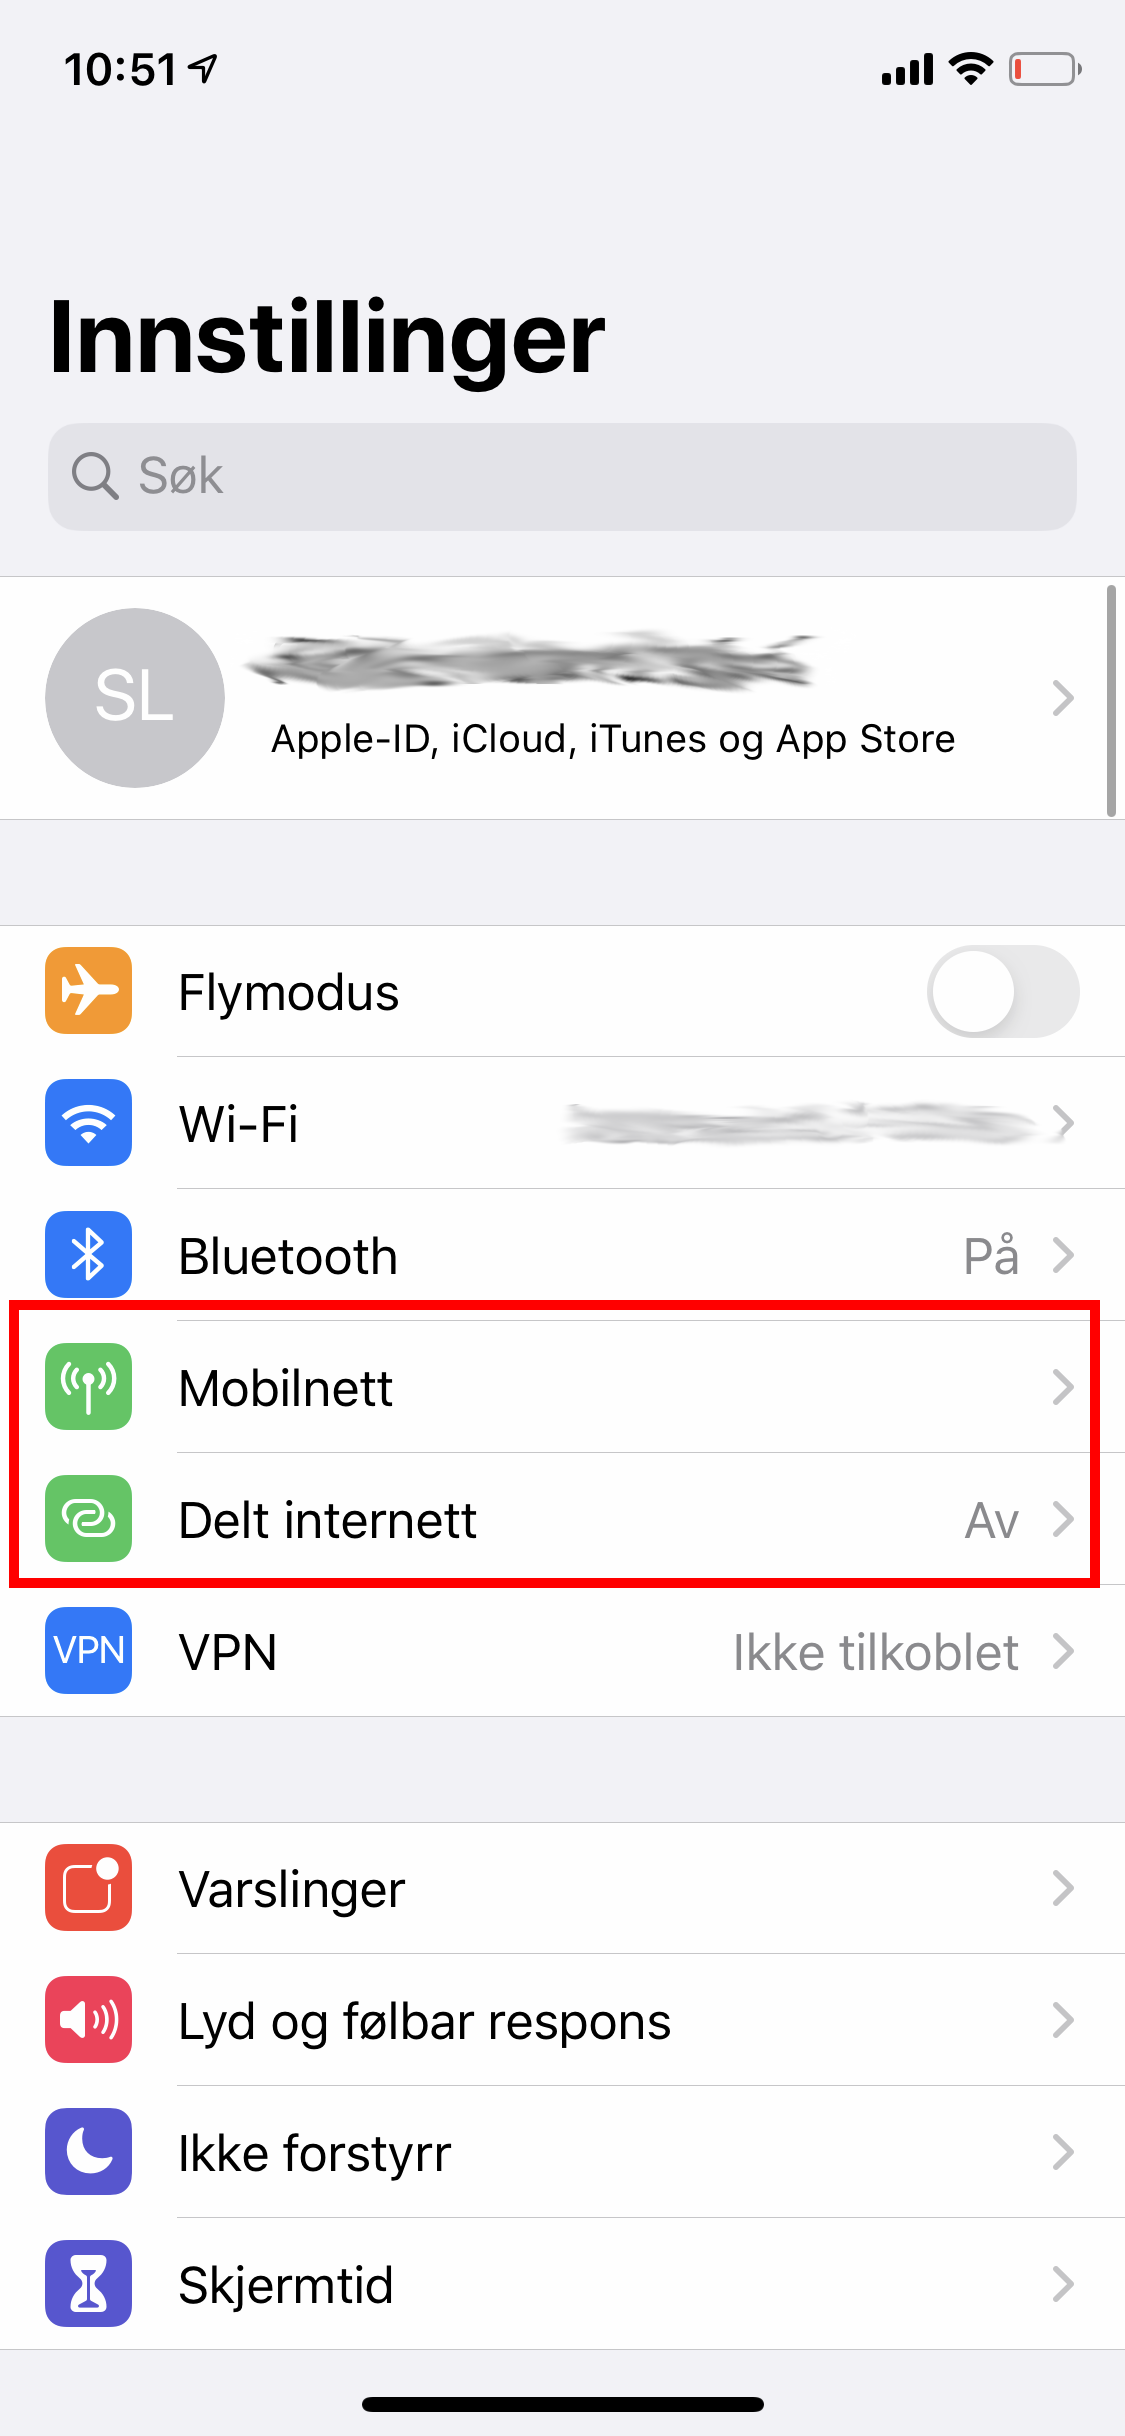 Skjermbilde av iOS-innstillinger for mobilnett og delt internett